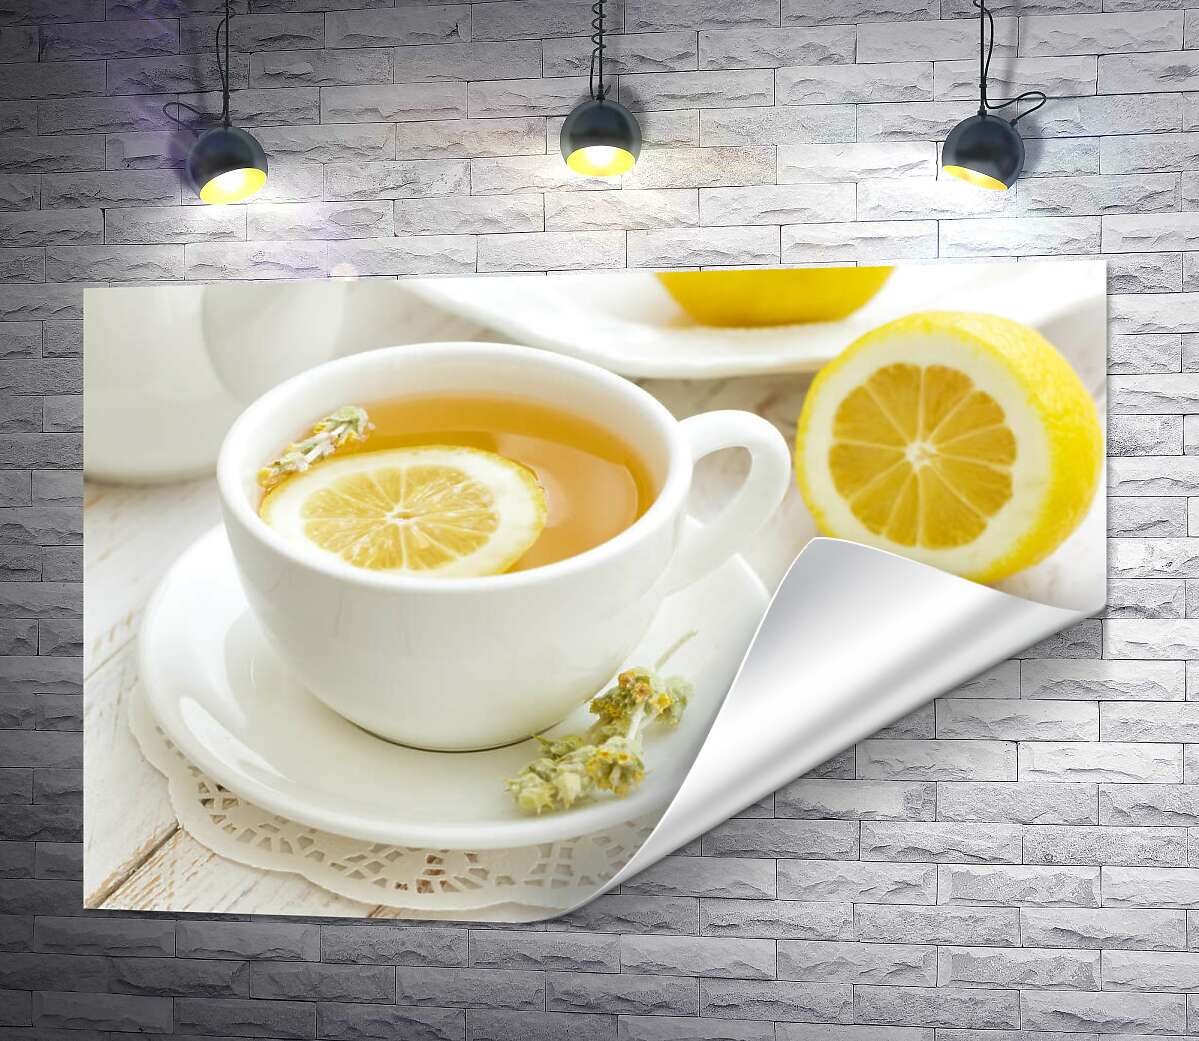 друк Контраст жовтого та білого у чашці лимонного чаю із засушеними квітами полину